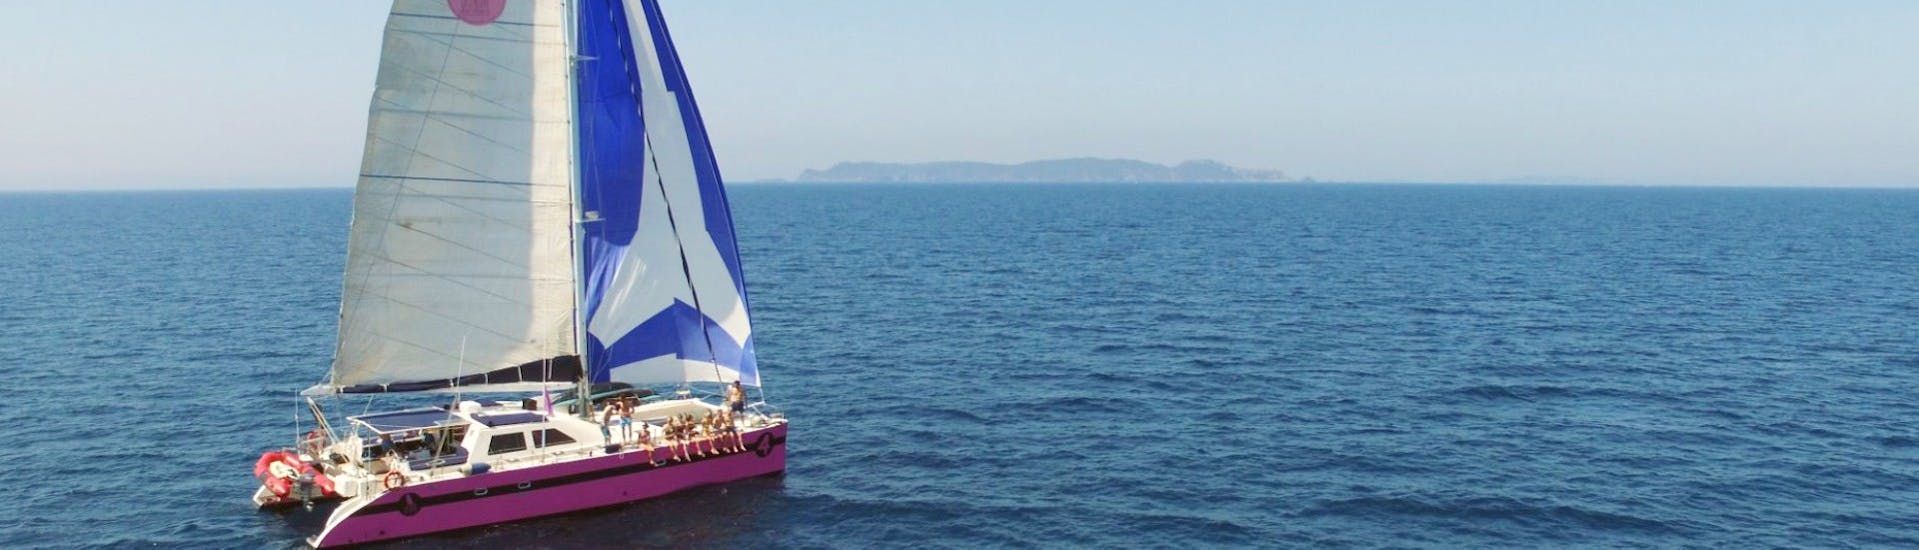 Vue lors de la Balade en catamaran au coucher du soleil le long de la Côte d'Azur avec Caseneuve Maxi Catamaran.